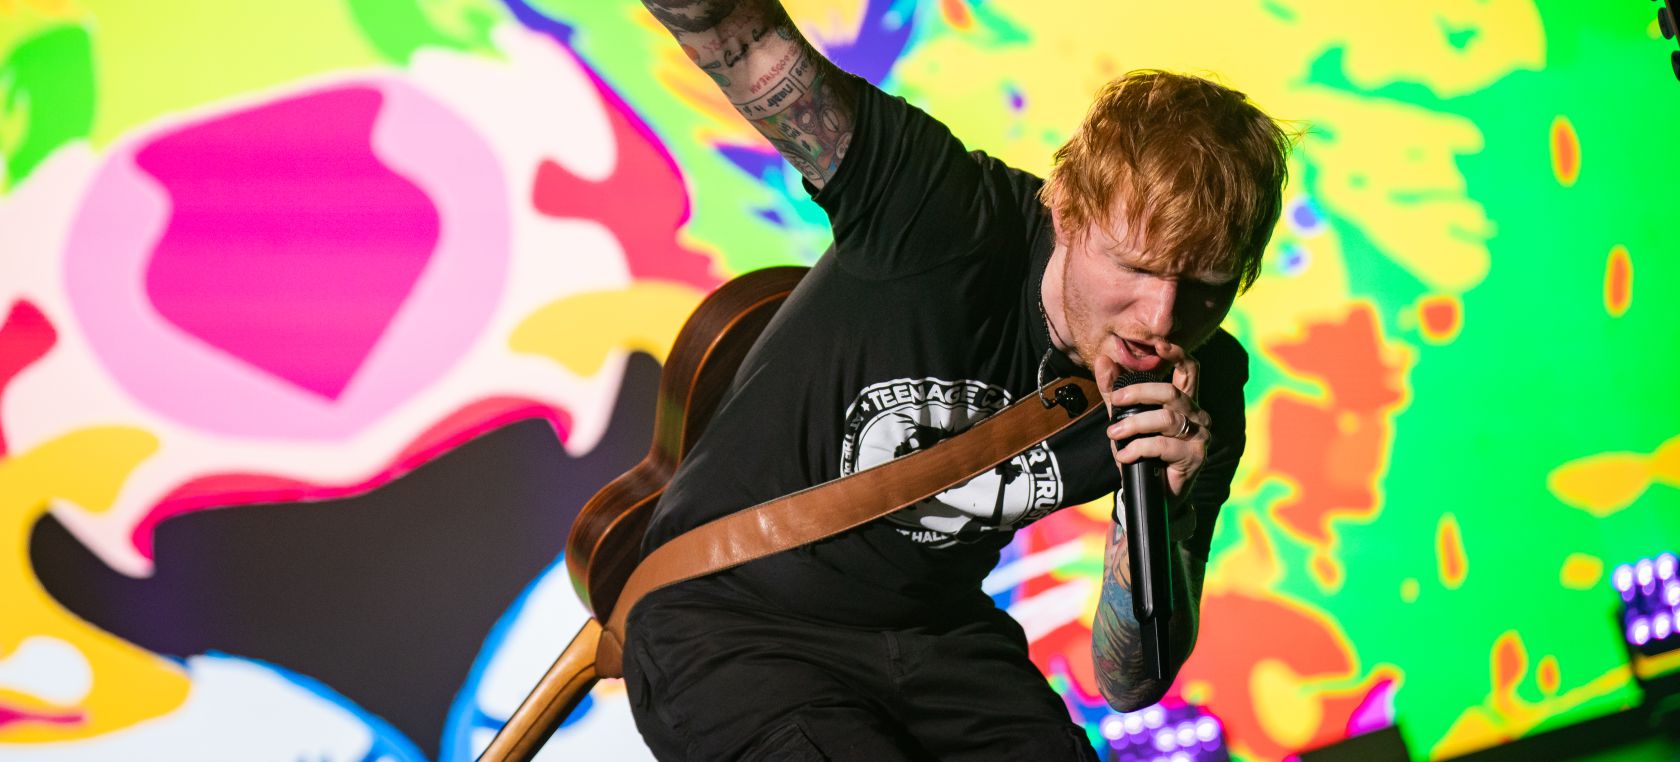 Ed Sheeran reeditará su disco 'Equals' con 4 canciones nuevas | Música |  LOS40